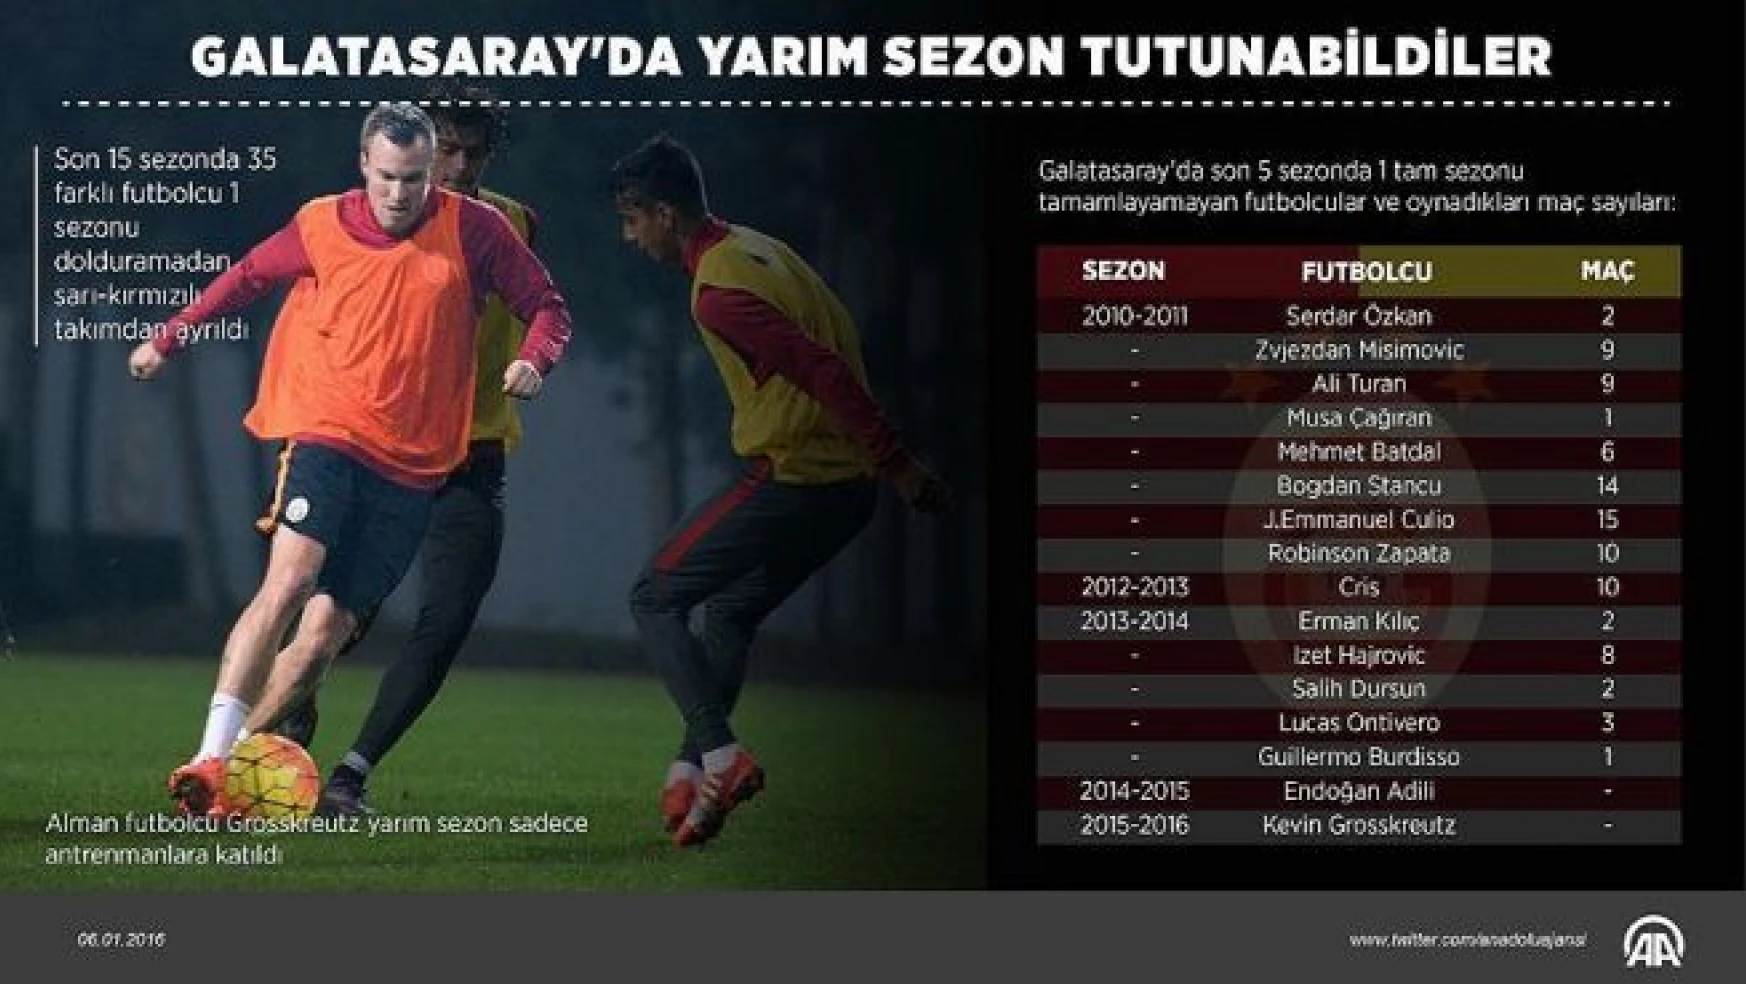 Galatasaray'da yarım sezon tutunabildiler